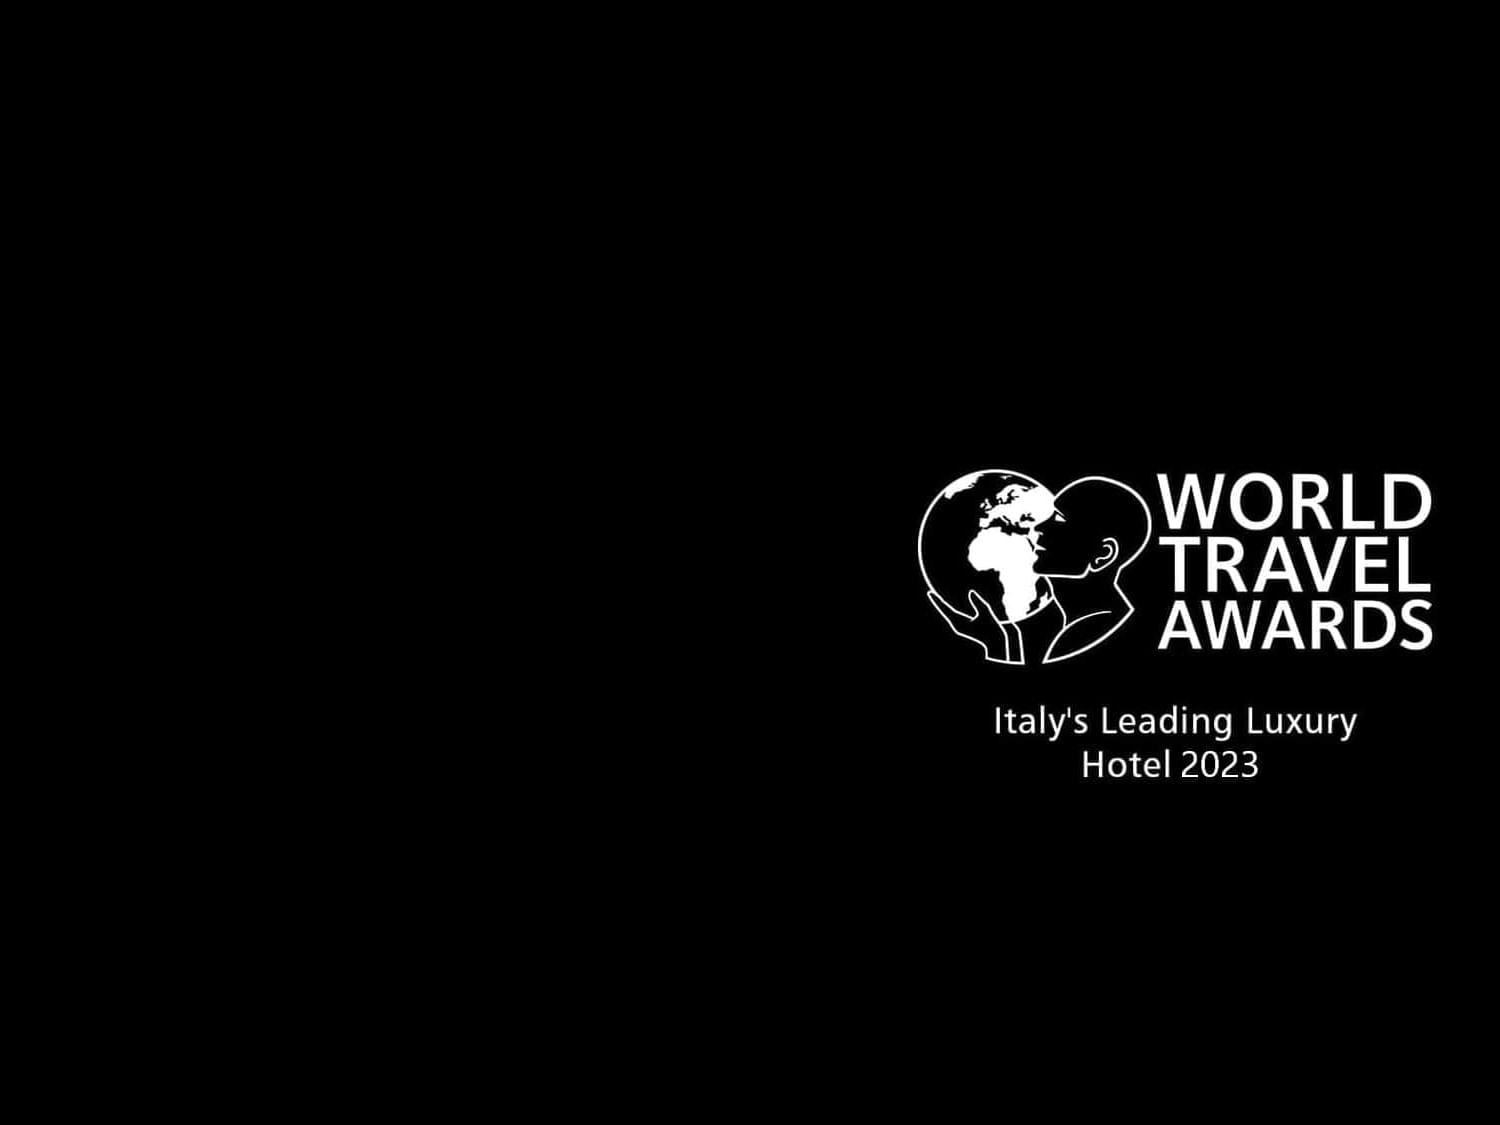 World Travel Awards: Italy’s Leading Luxury Hotel 2023